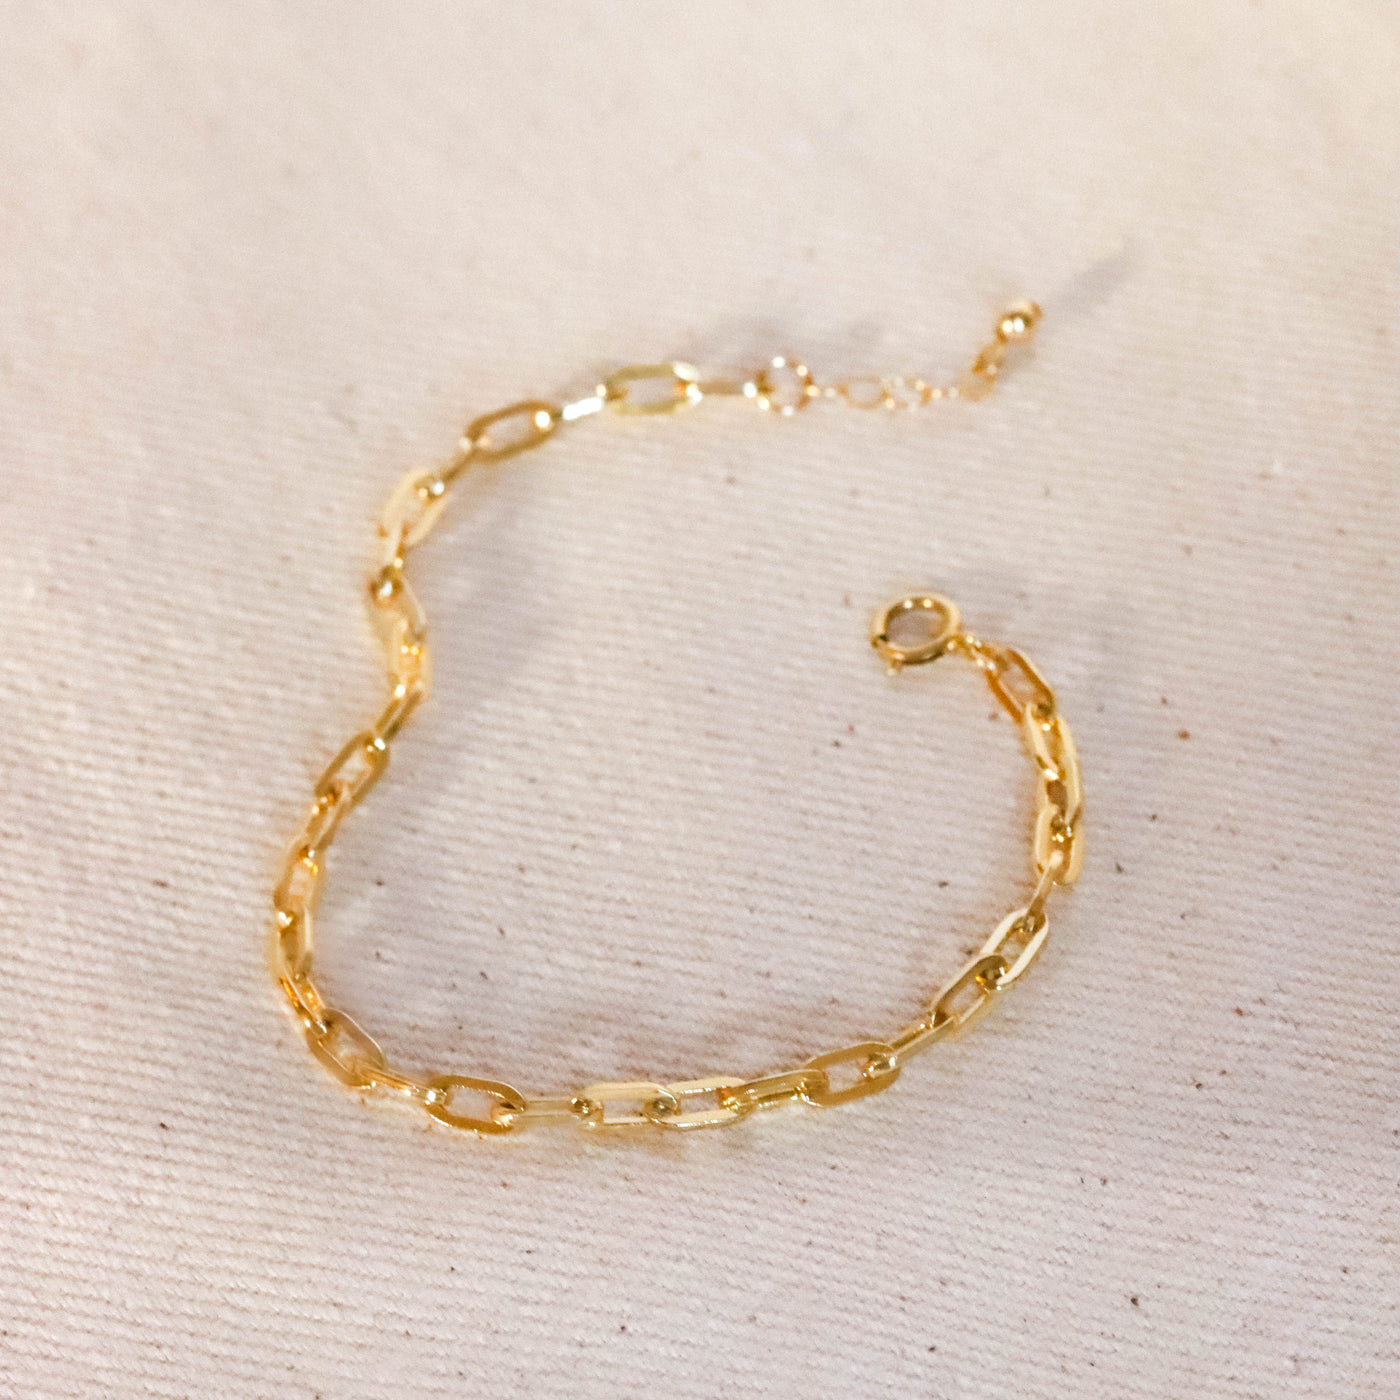 Gold paper clip chain bracelet